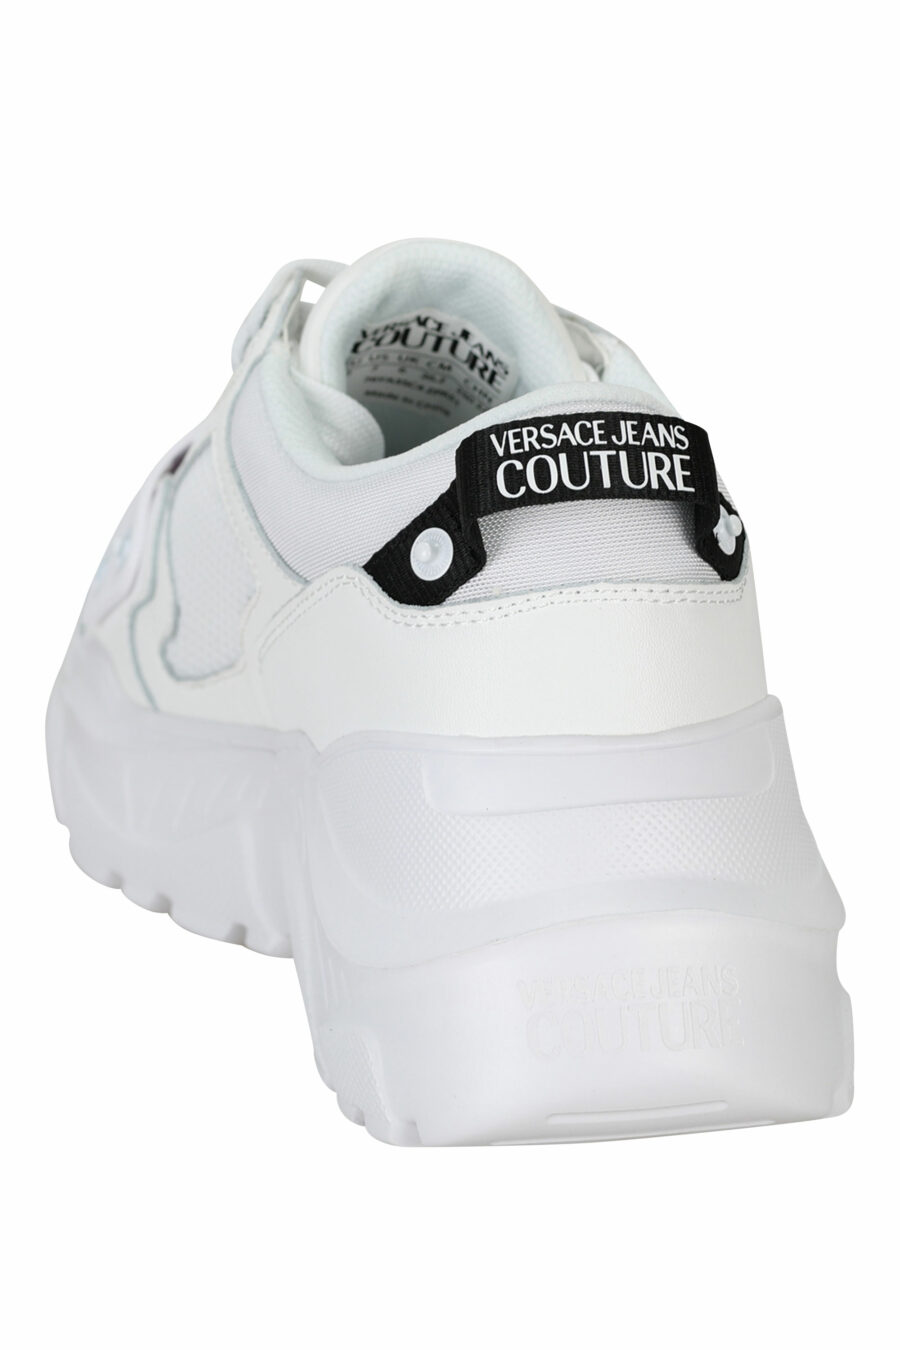 Sapatilhas "speedtrack" brancas com mini-logotipo de borracha preto na frente - 8052019604337 3